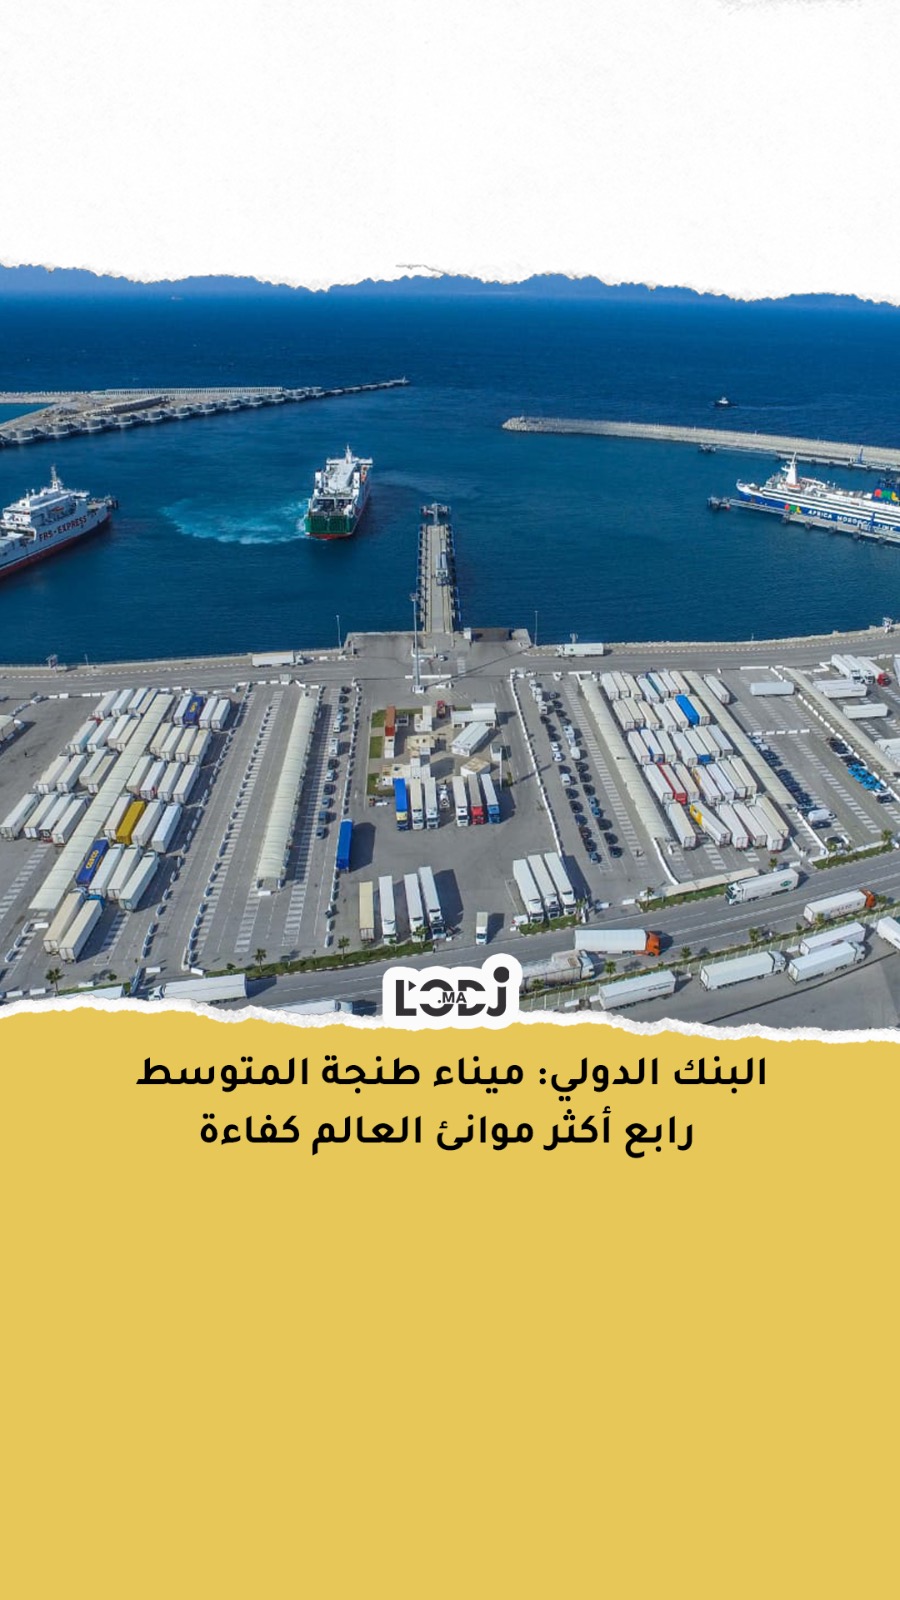 البنك الدولي: ميناء طنجة المتوسط رابع أكثر موانئ العالم كفاءة